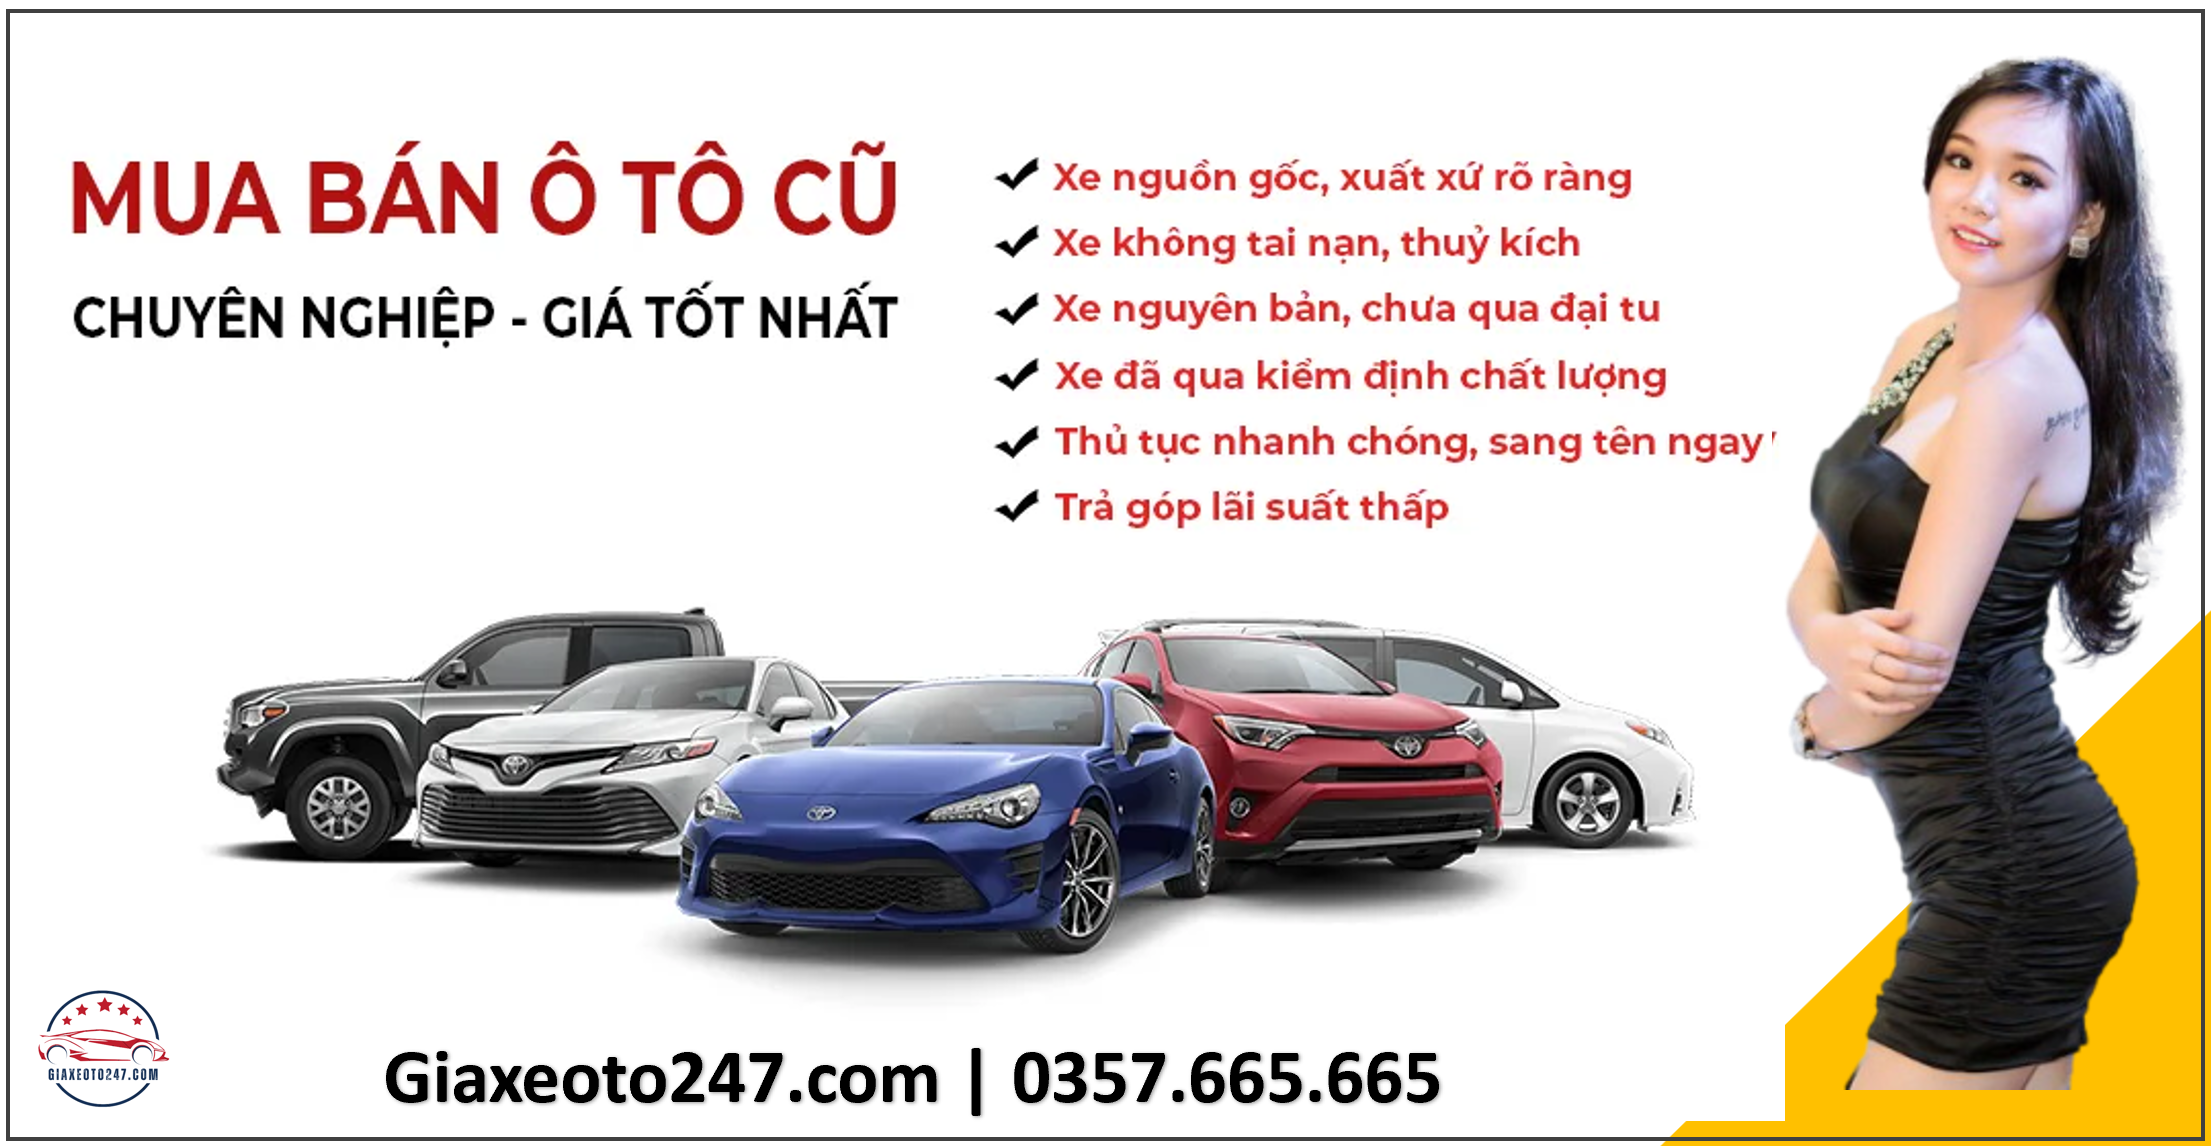 Dich vu thu mua o to cu da qua su dung mua ban toan quoc 3 - Top 5 xe Limousine Hà Nội - Hải Phòng đưa đón tận nơi, chạy cao tốc